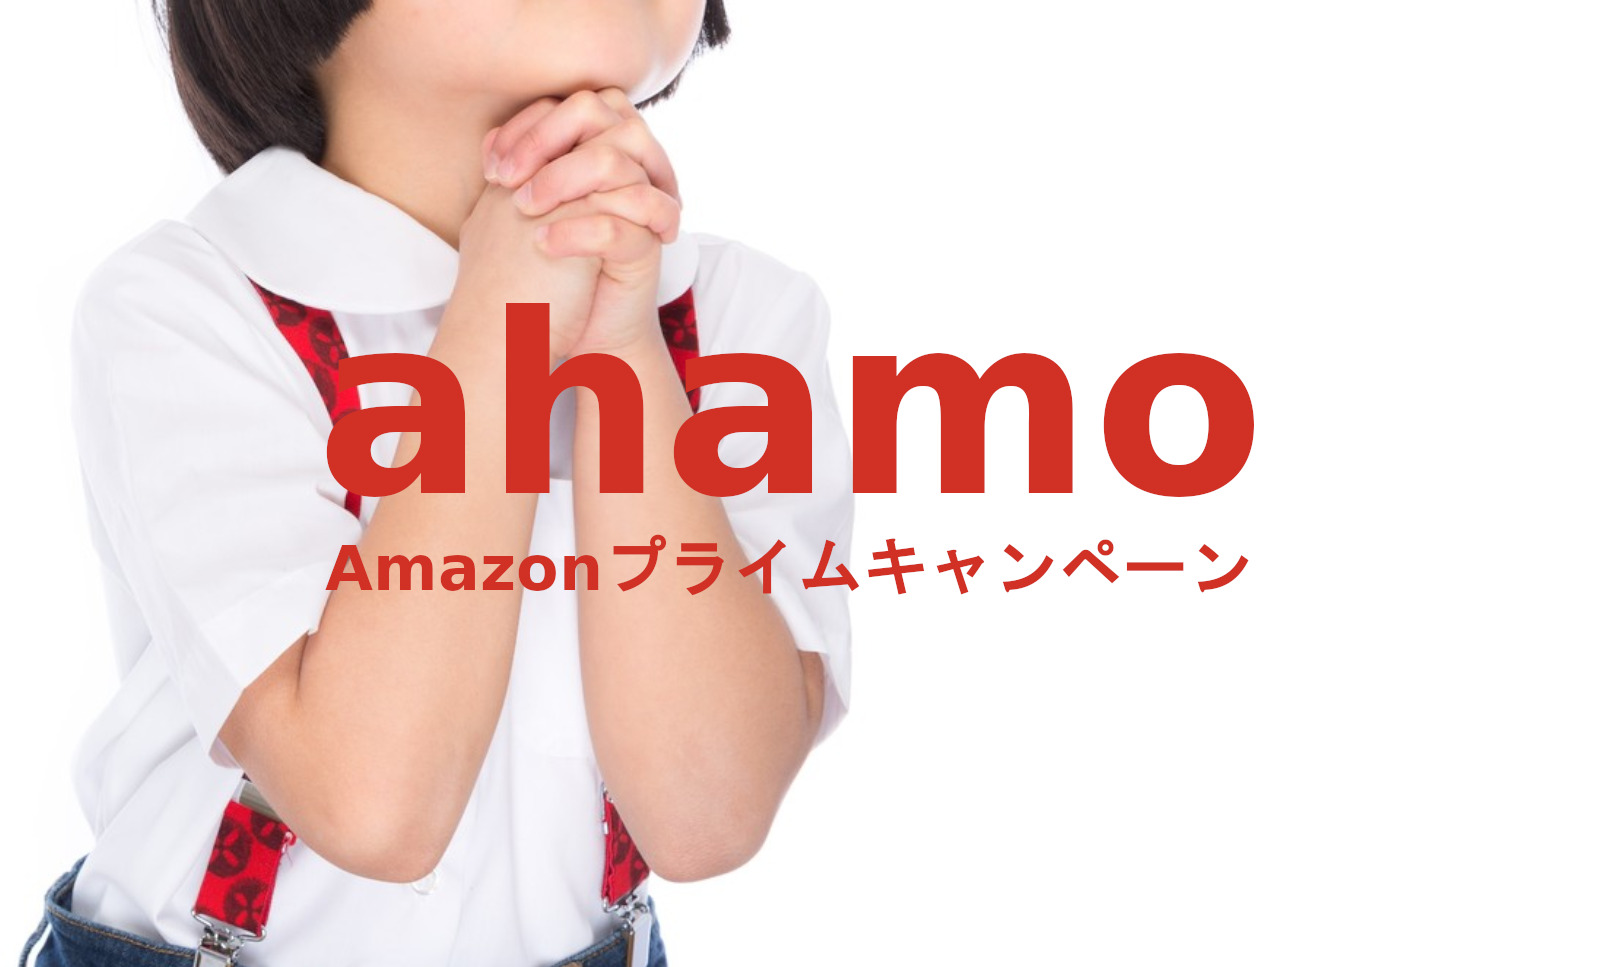 【終了済】ahamo(アハモ)でAmazonプライム特典が受け取れるキャンペーンを解説のサムネイル画像